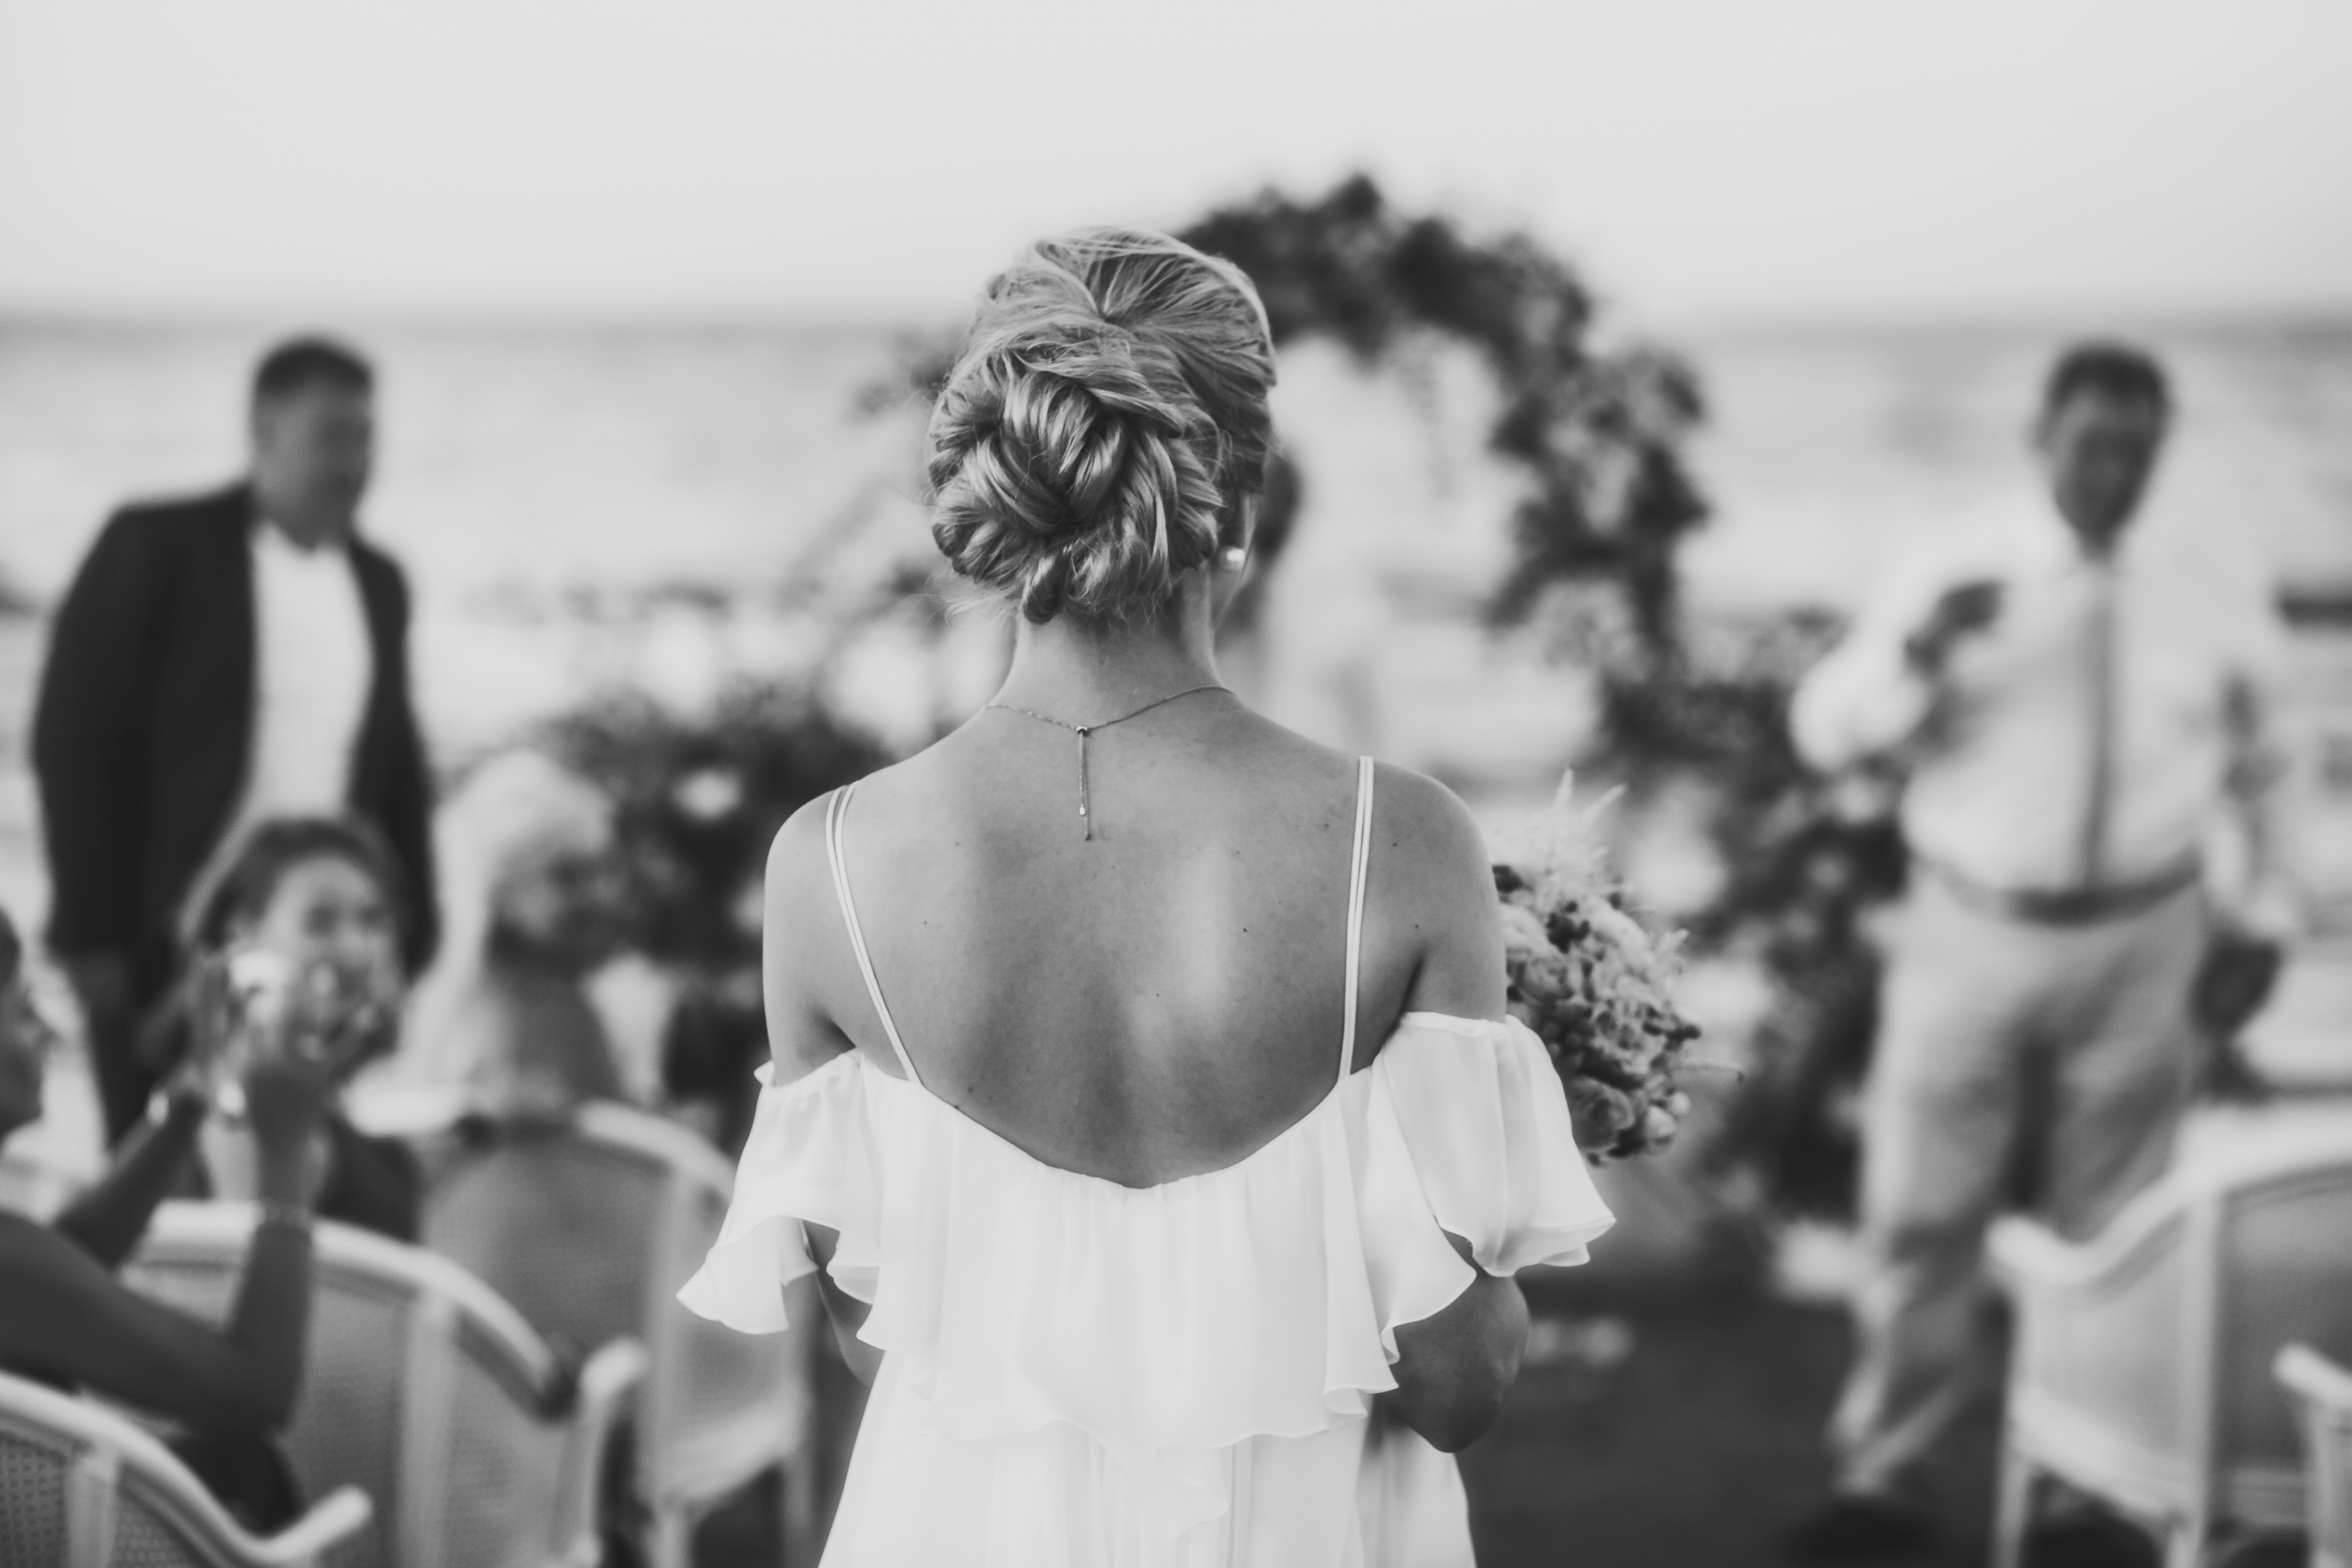 Vue arrière d'une mariée descendant l'allée | Source : Shutterstock